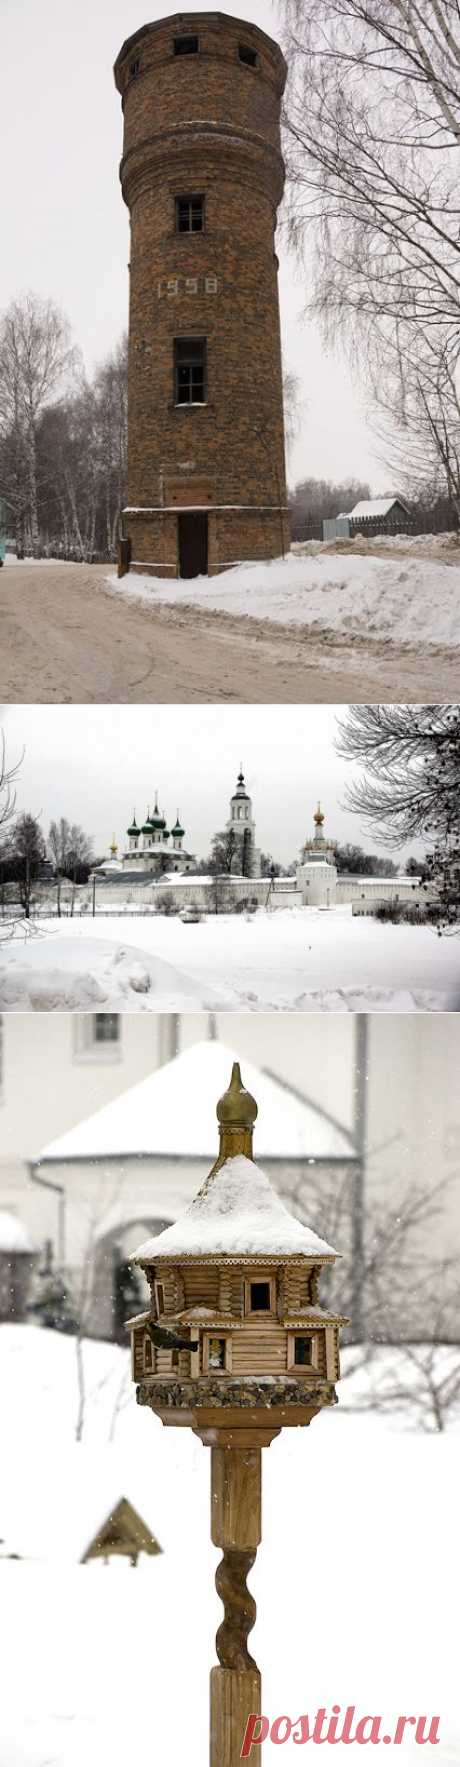 (+1) тема - Толгский монастырь 2013 г | ЛЮБИМЫЕ